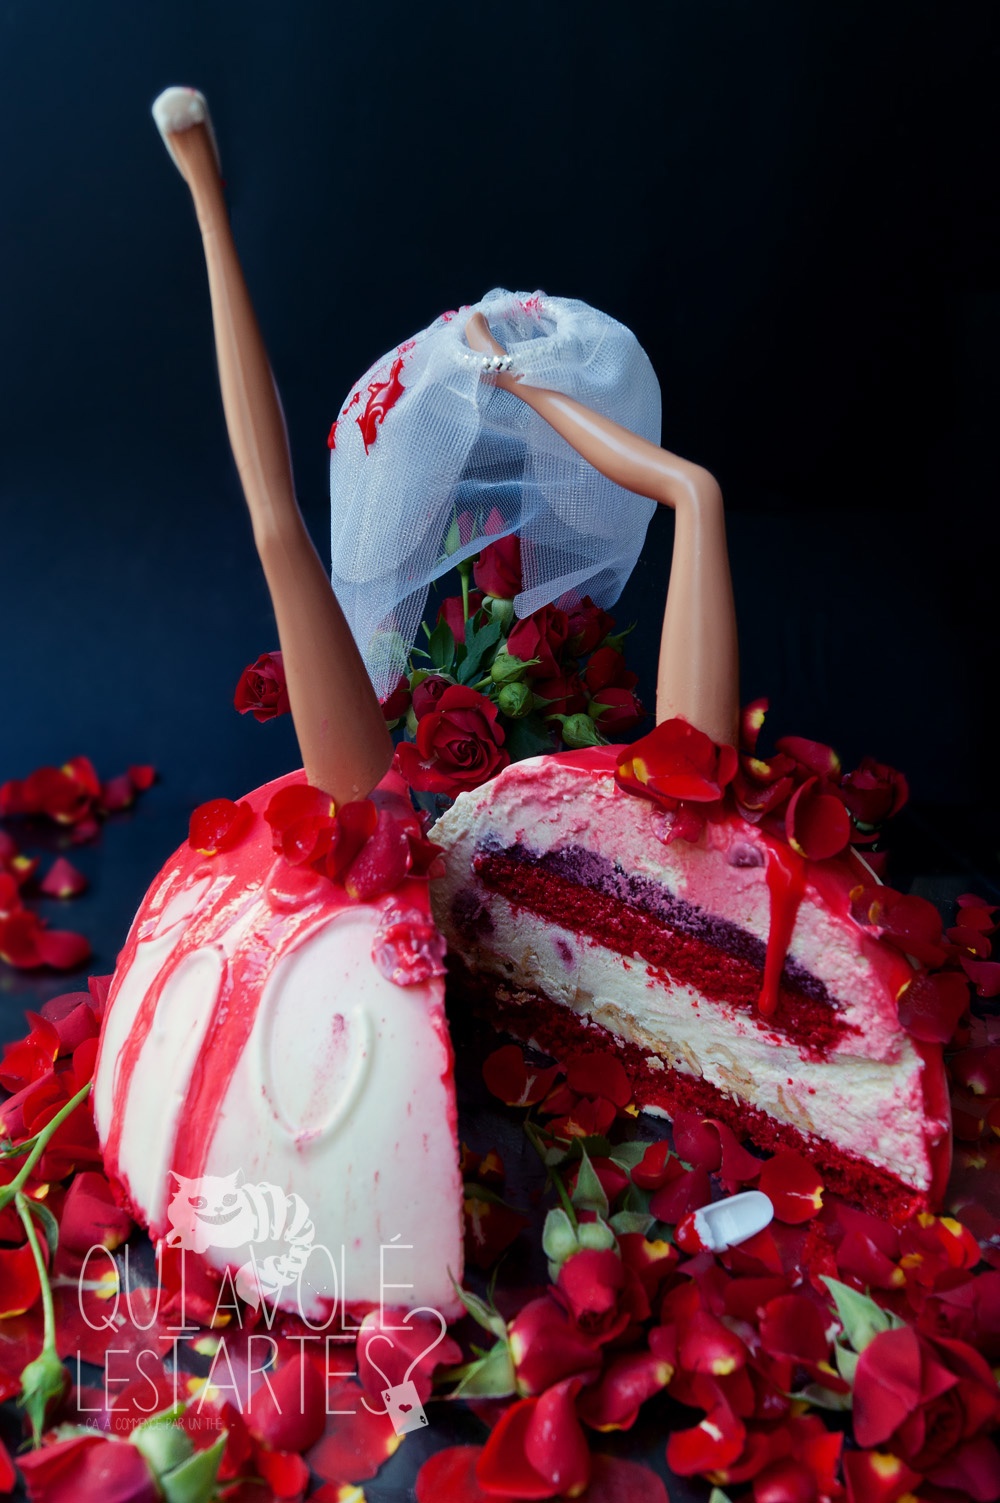 Corpse Bride 3 - Studio 2 création - Qui a volé les tartes